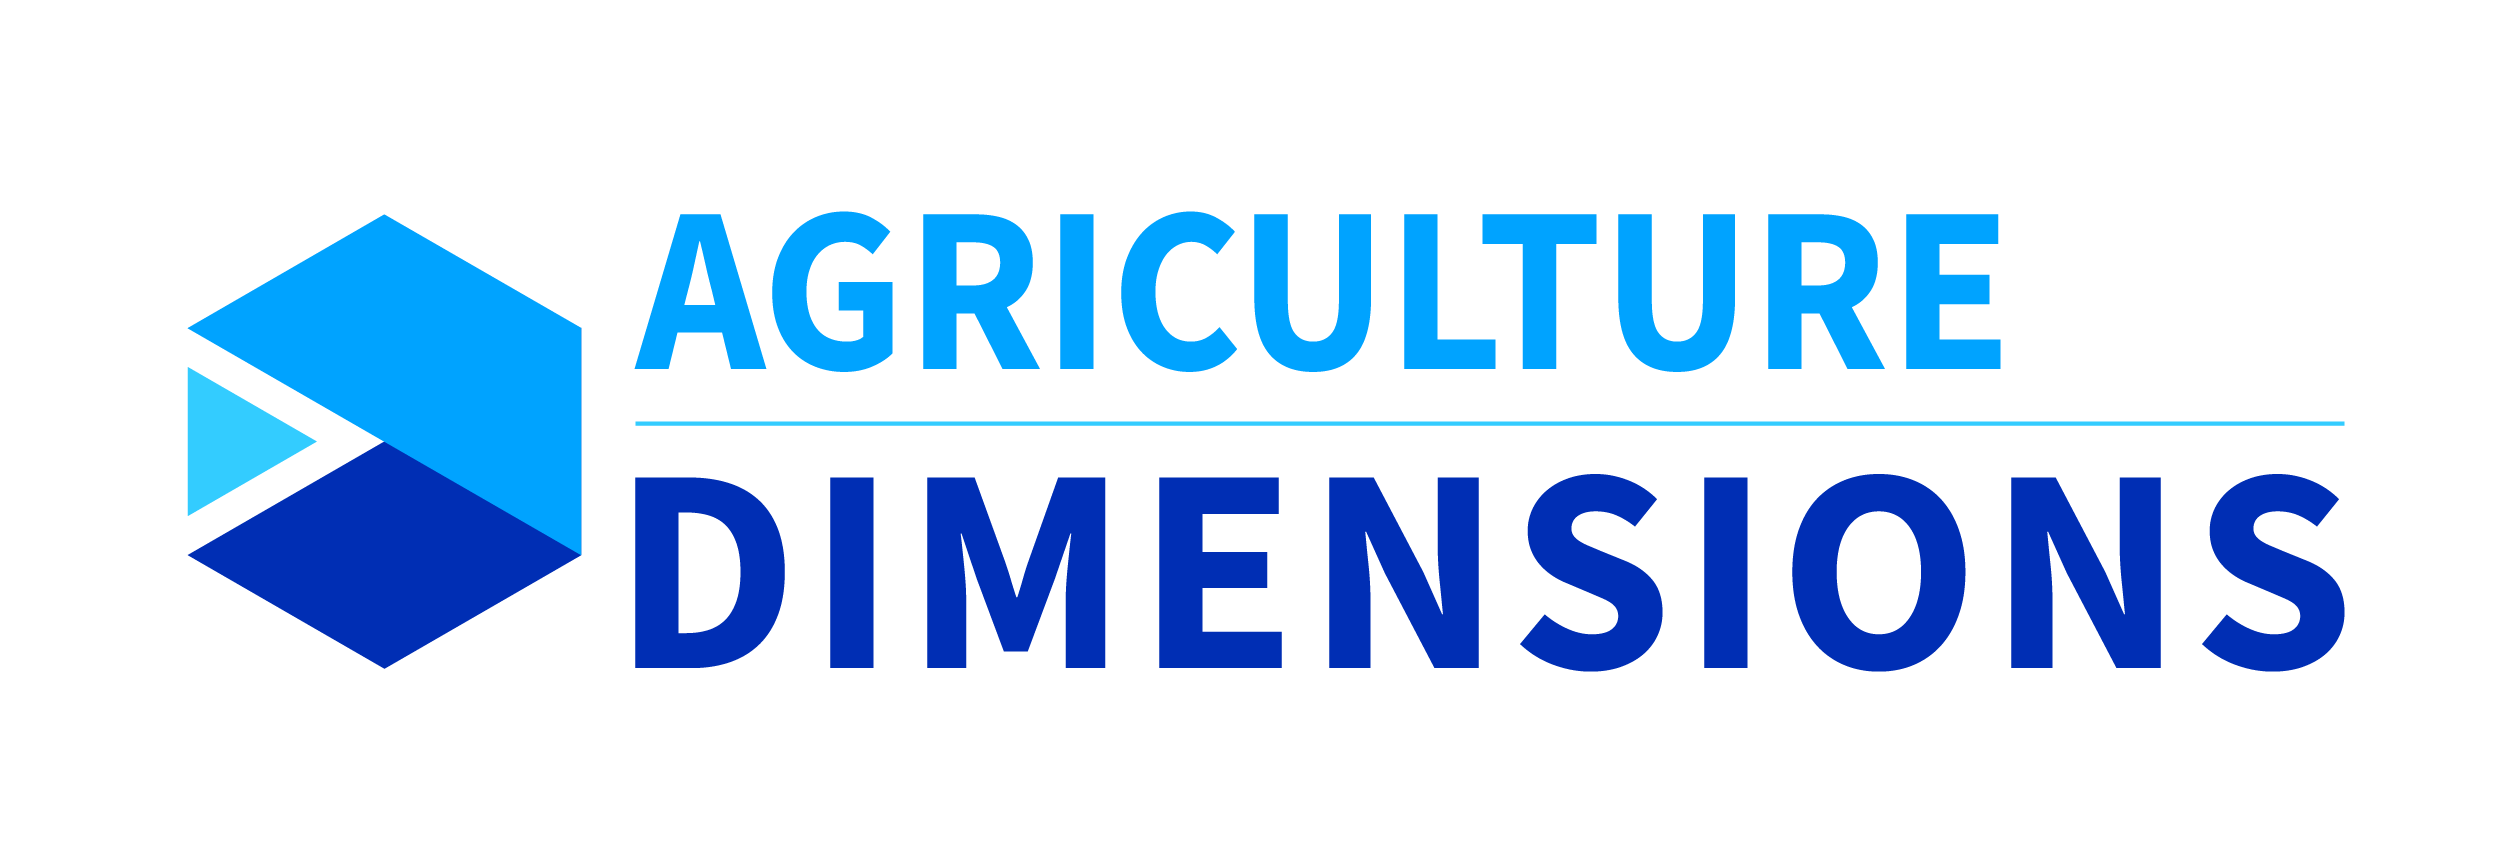 Dimensions de l’agriculture - Acceltech Pte Ltd